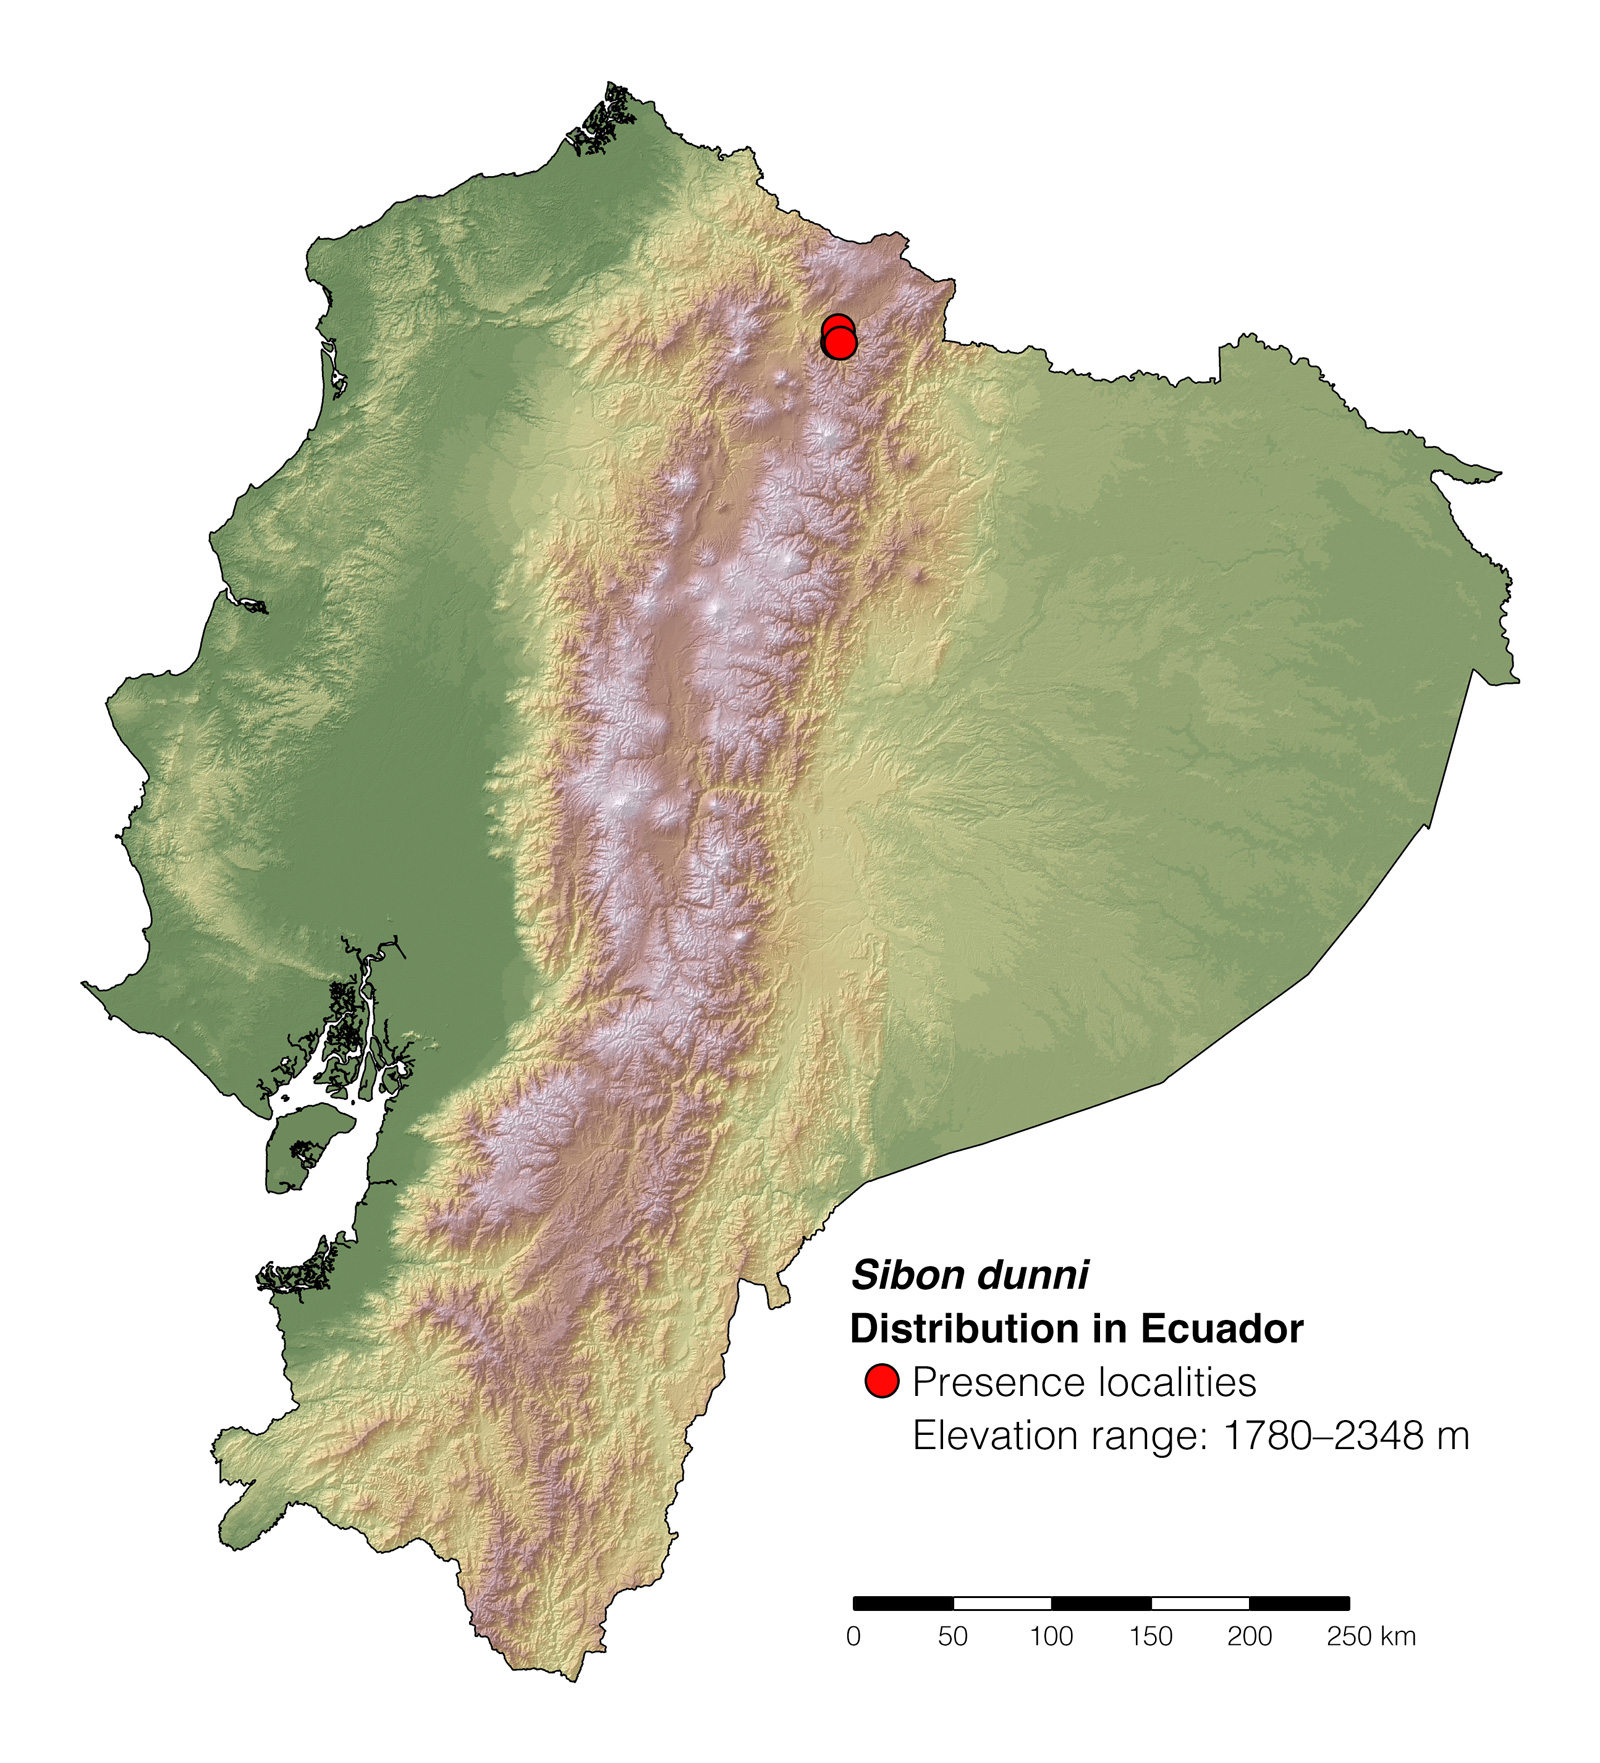 Distribution of Sibon dunni in Ecuador